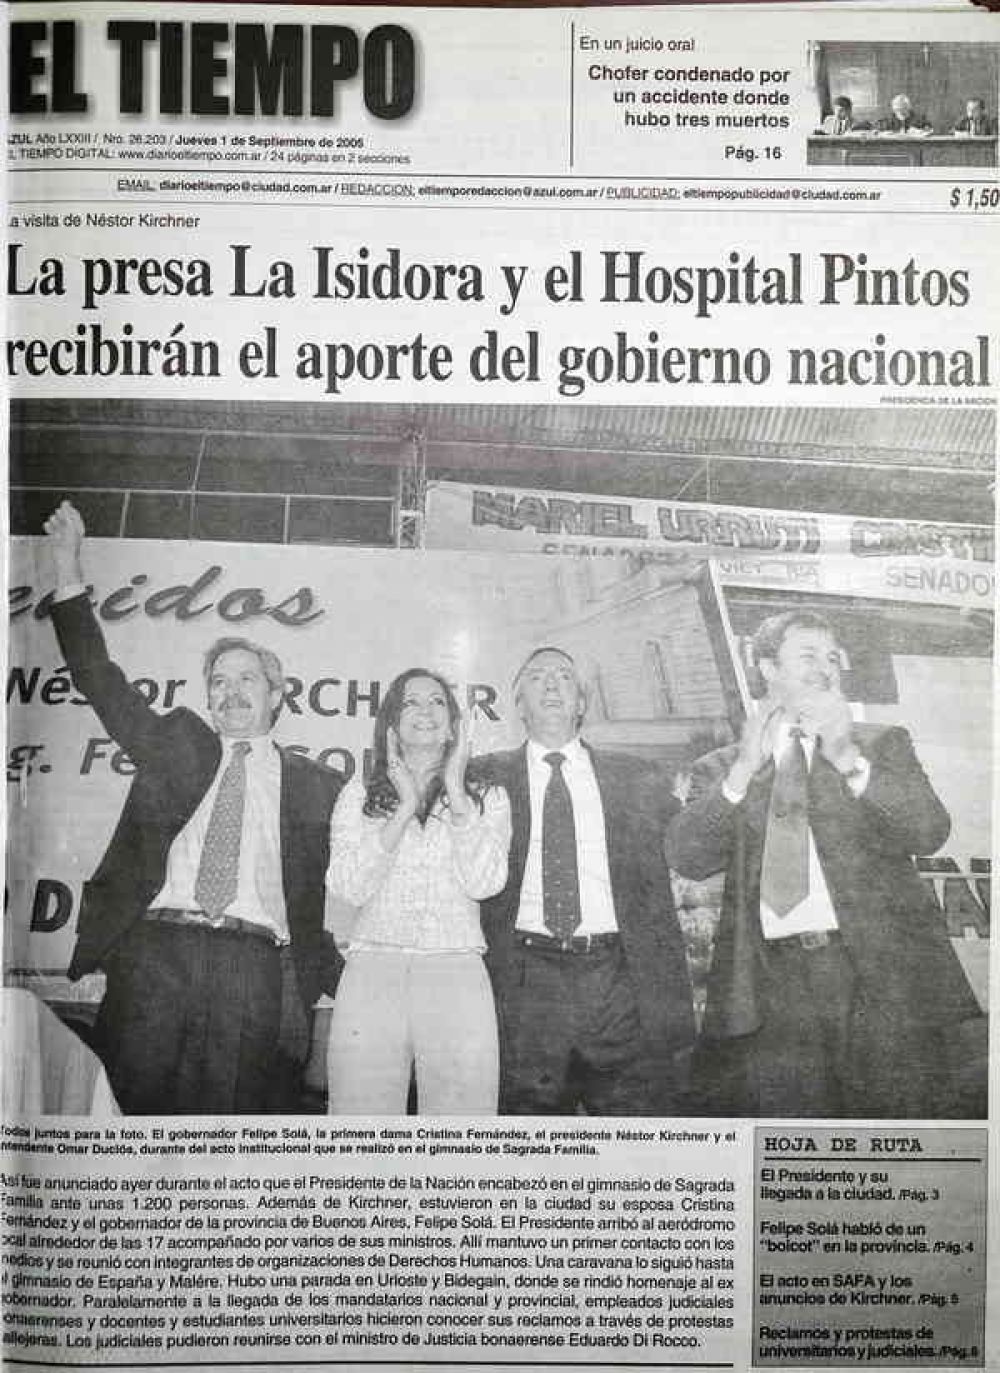 Un da como hoy, pero del ao 2005, visit esta ciudad el presidente Nstor Kirchner